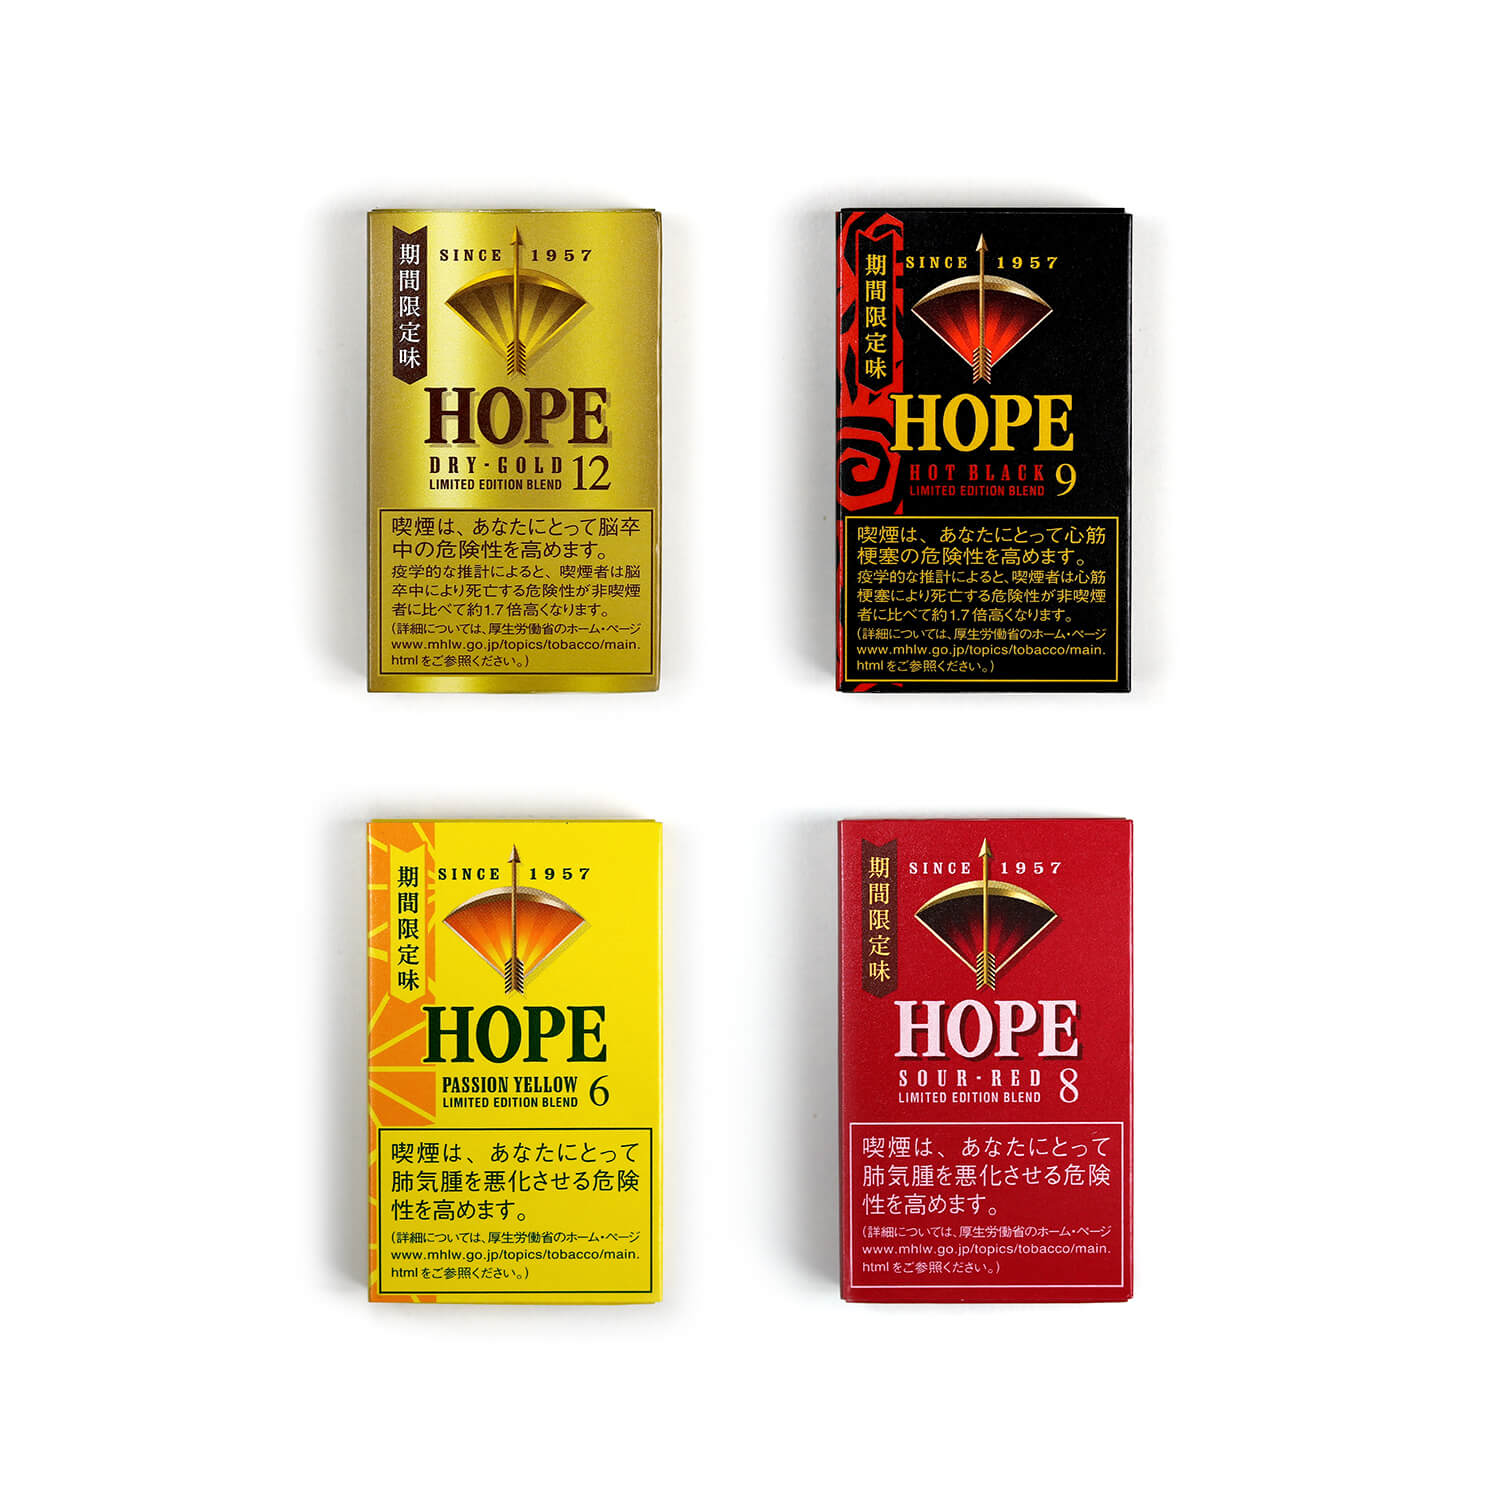 HOPEのパッケージデザイン